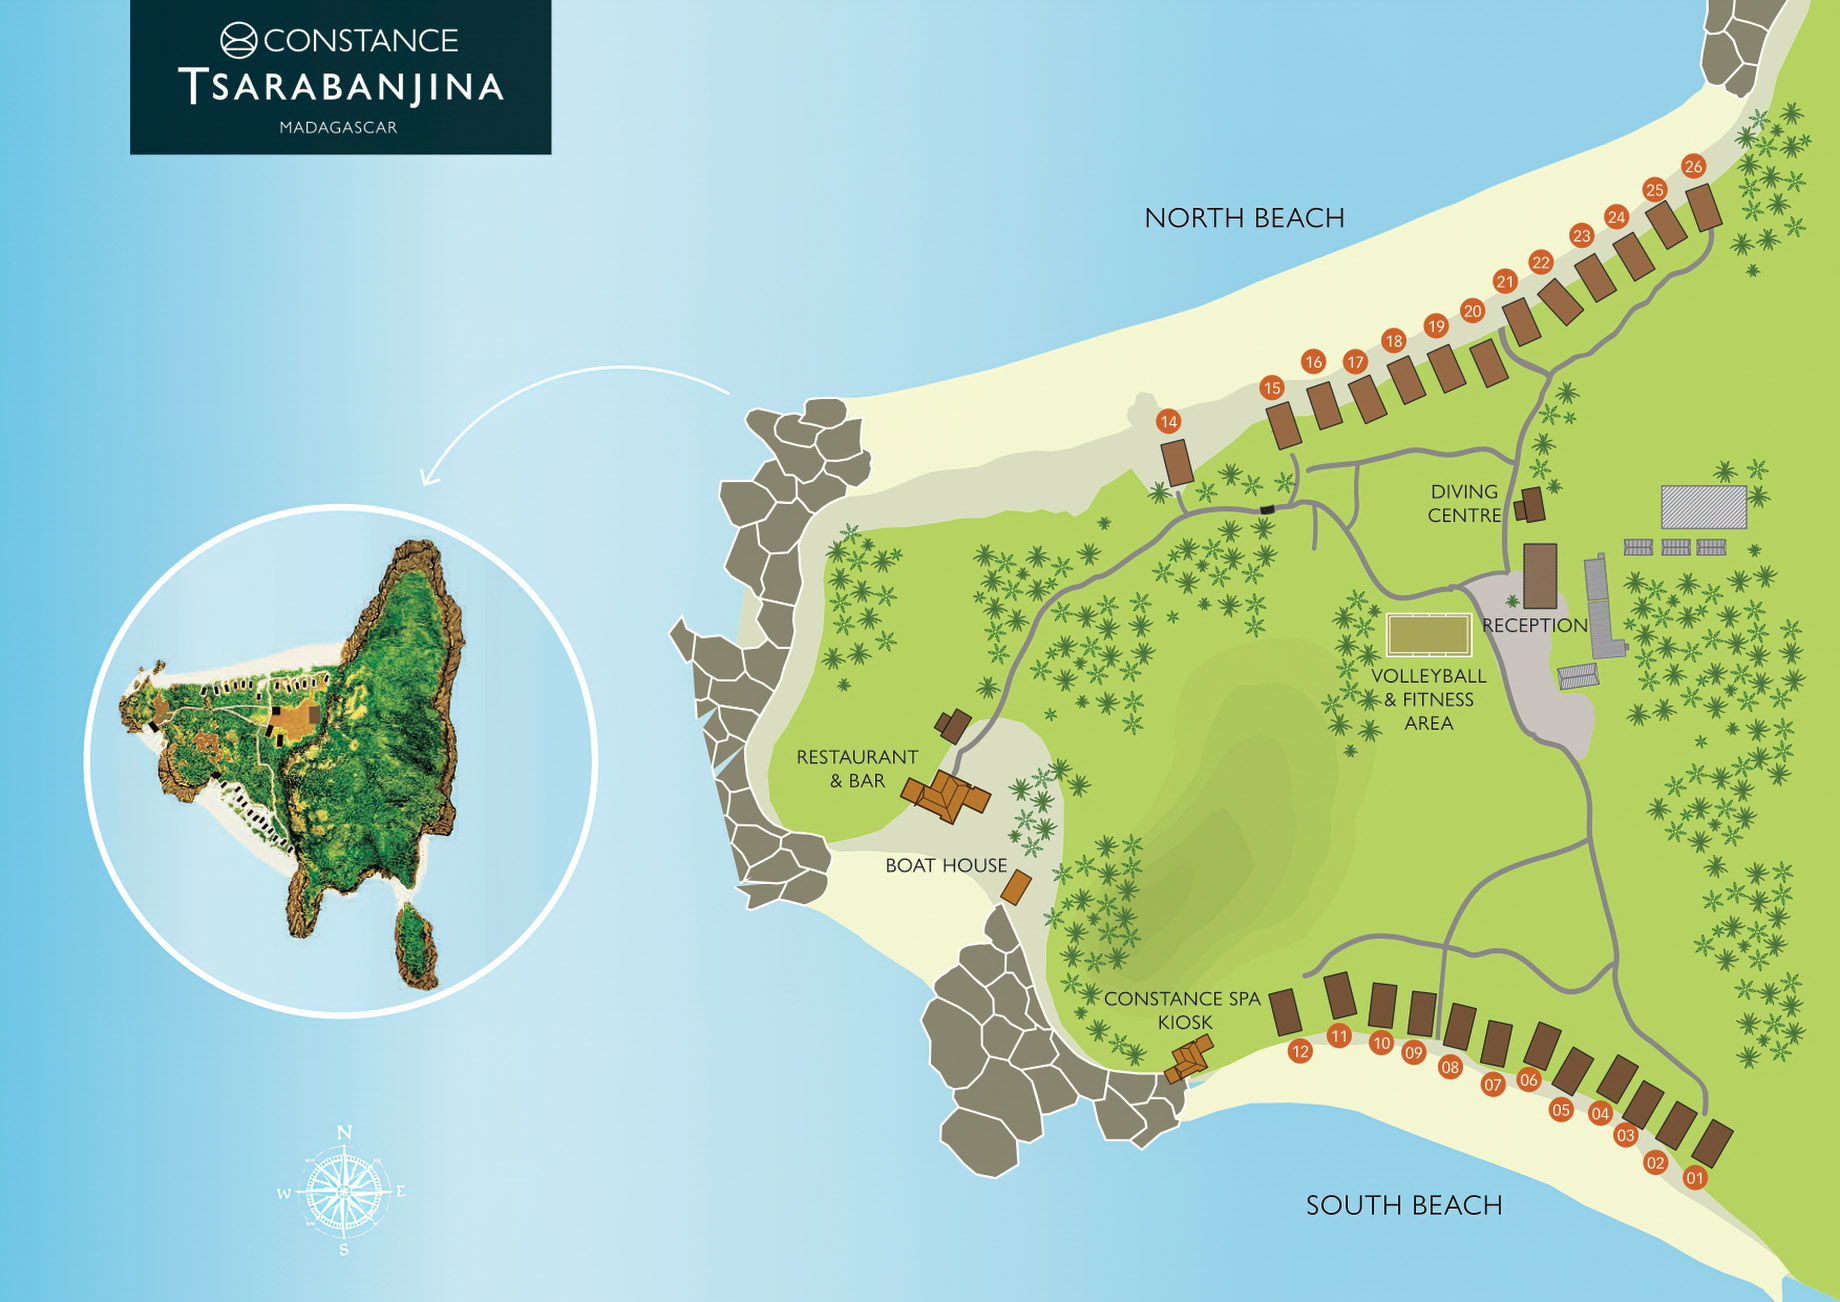 Constance Tsarabanjina Island Resort – Madagascar – Map